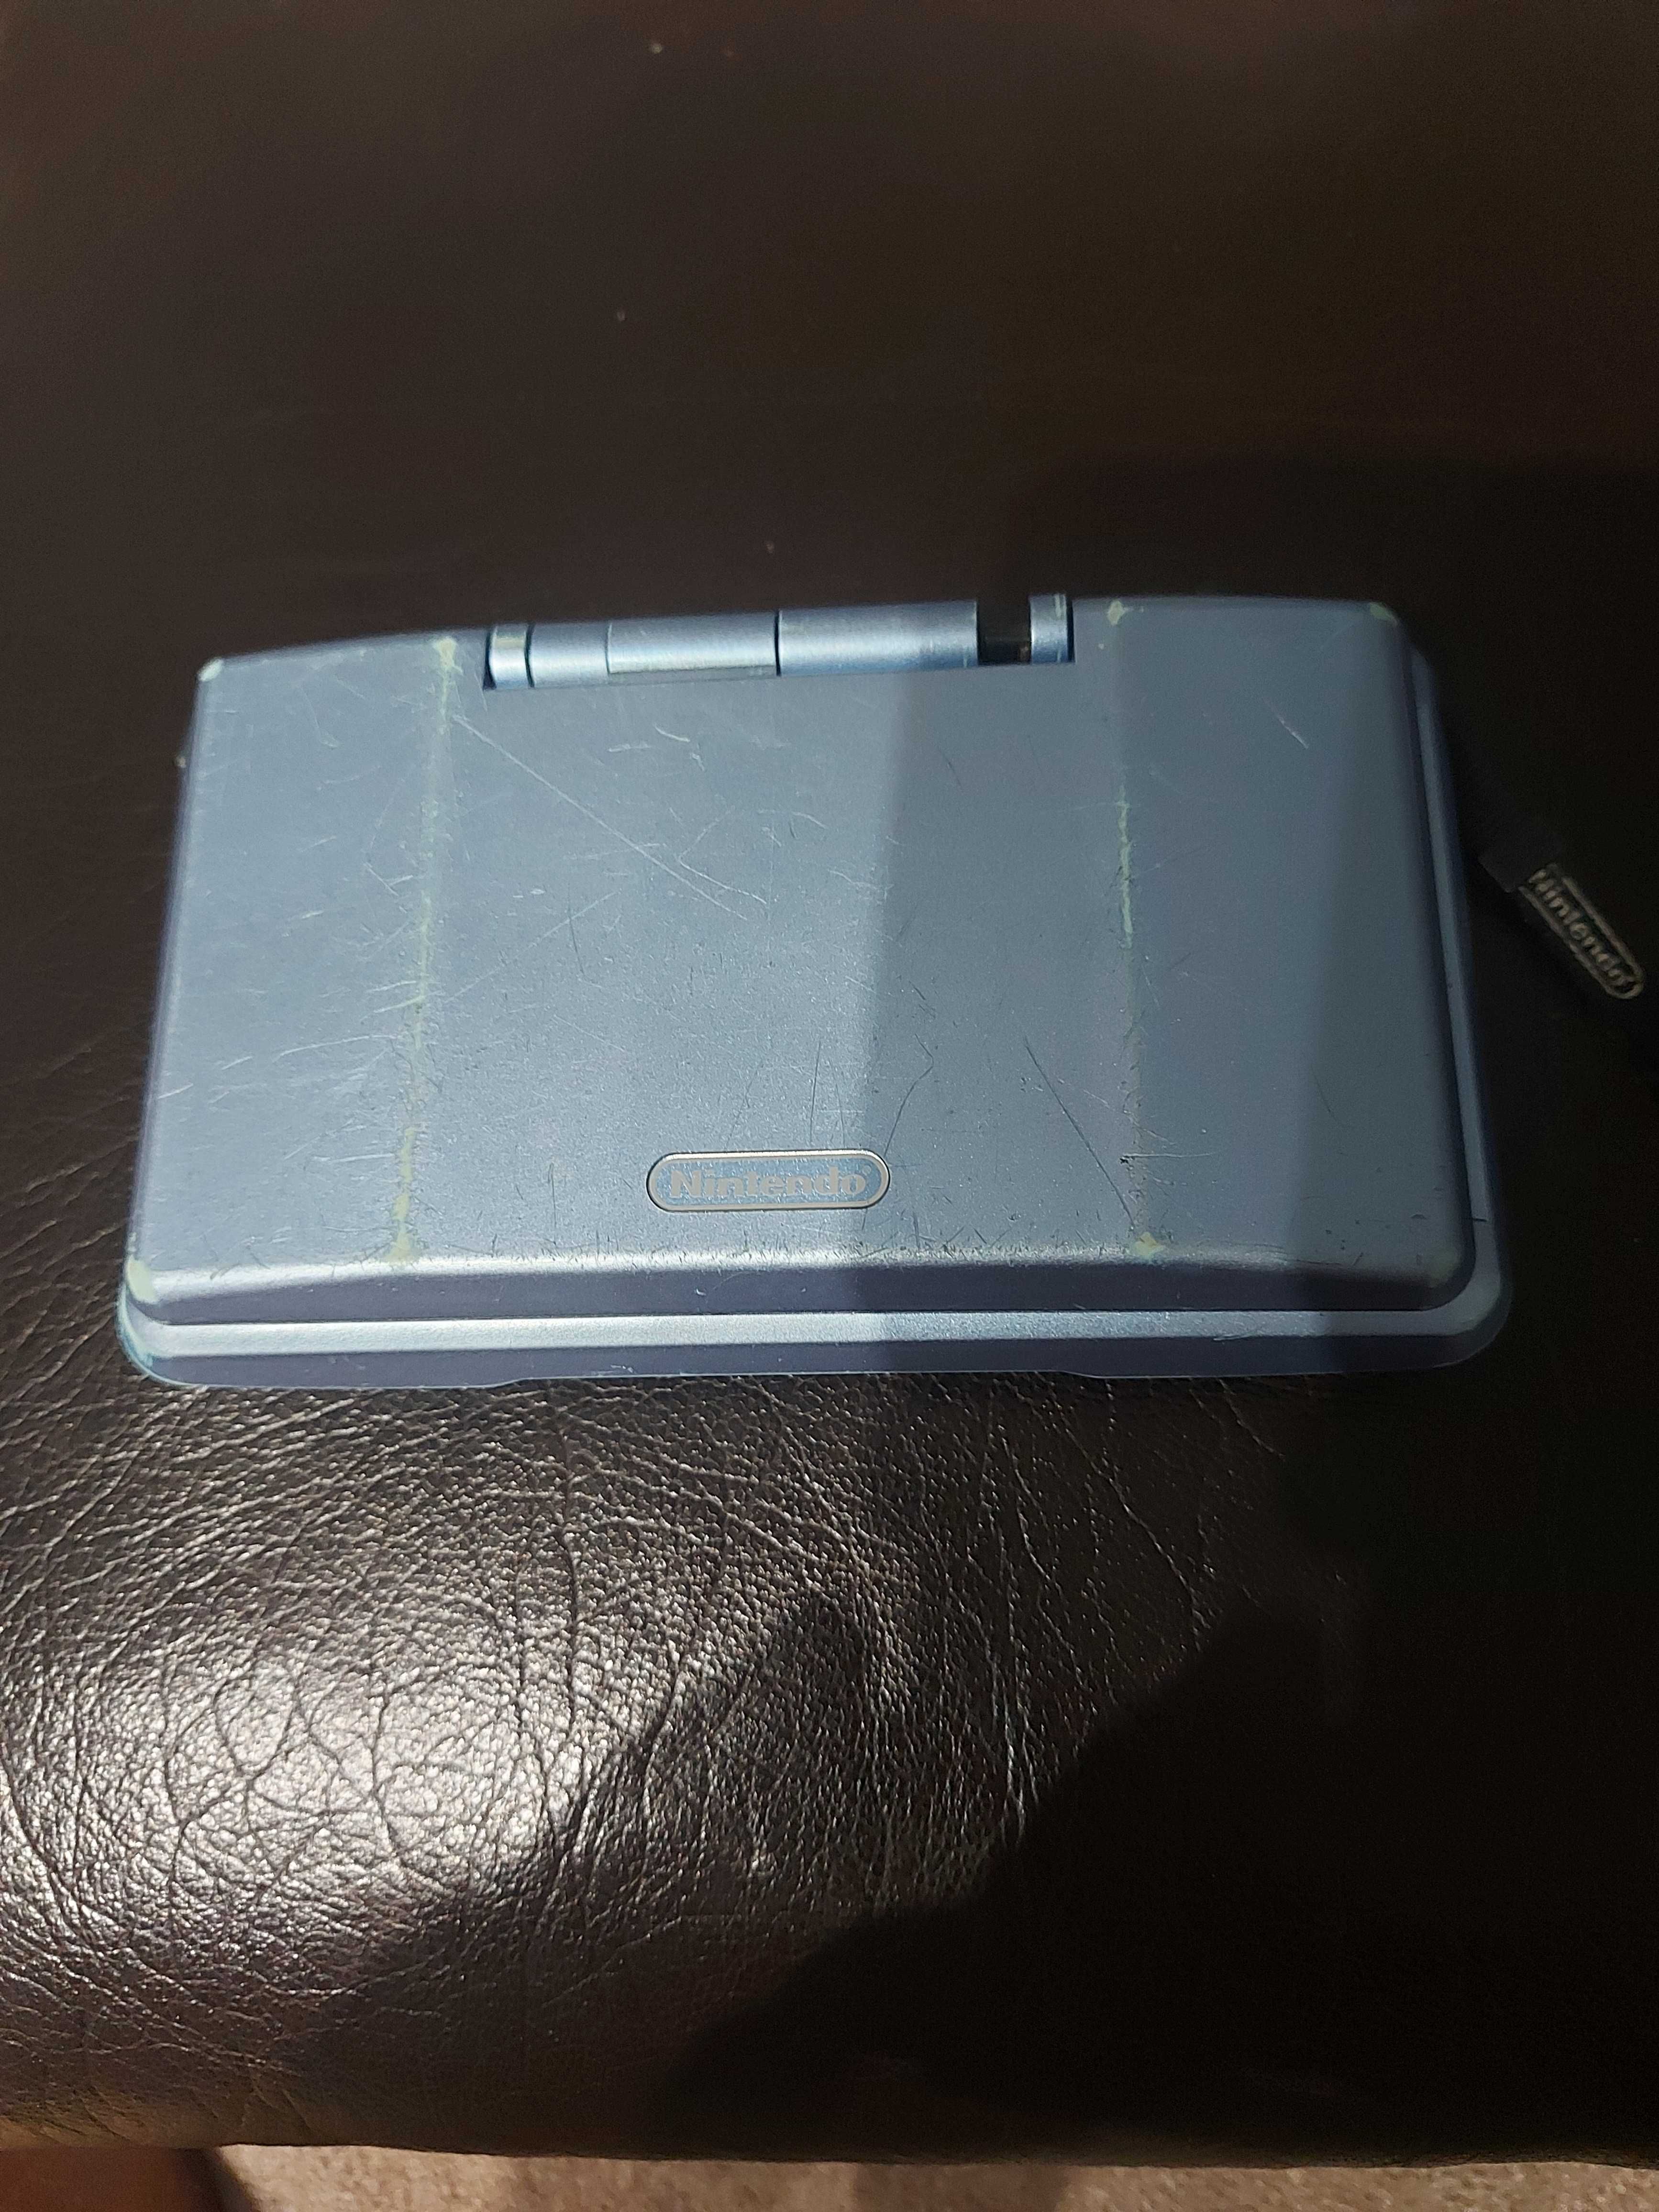 Nintendo DS Ntr-001